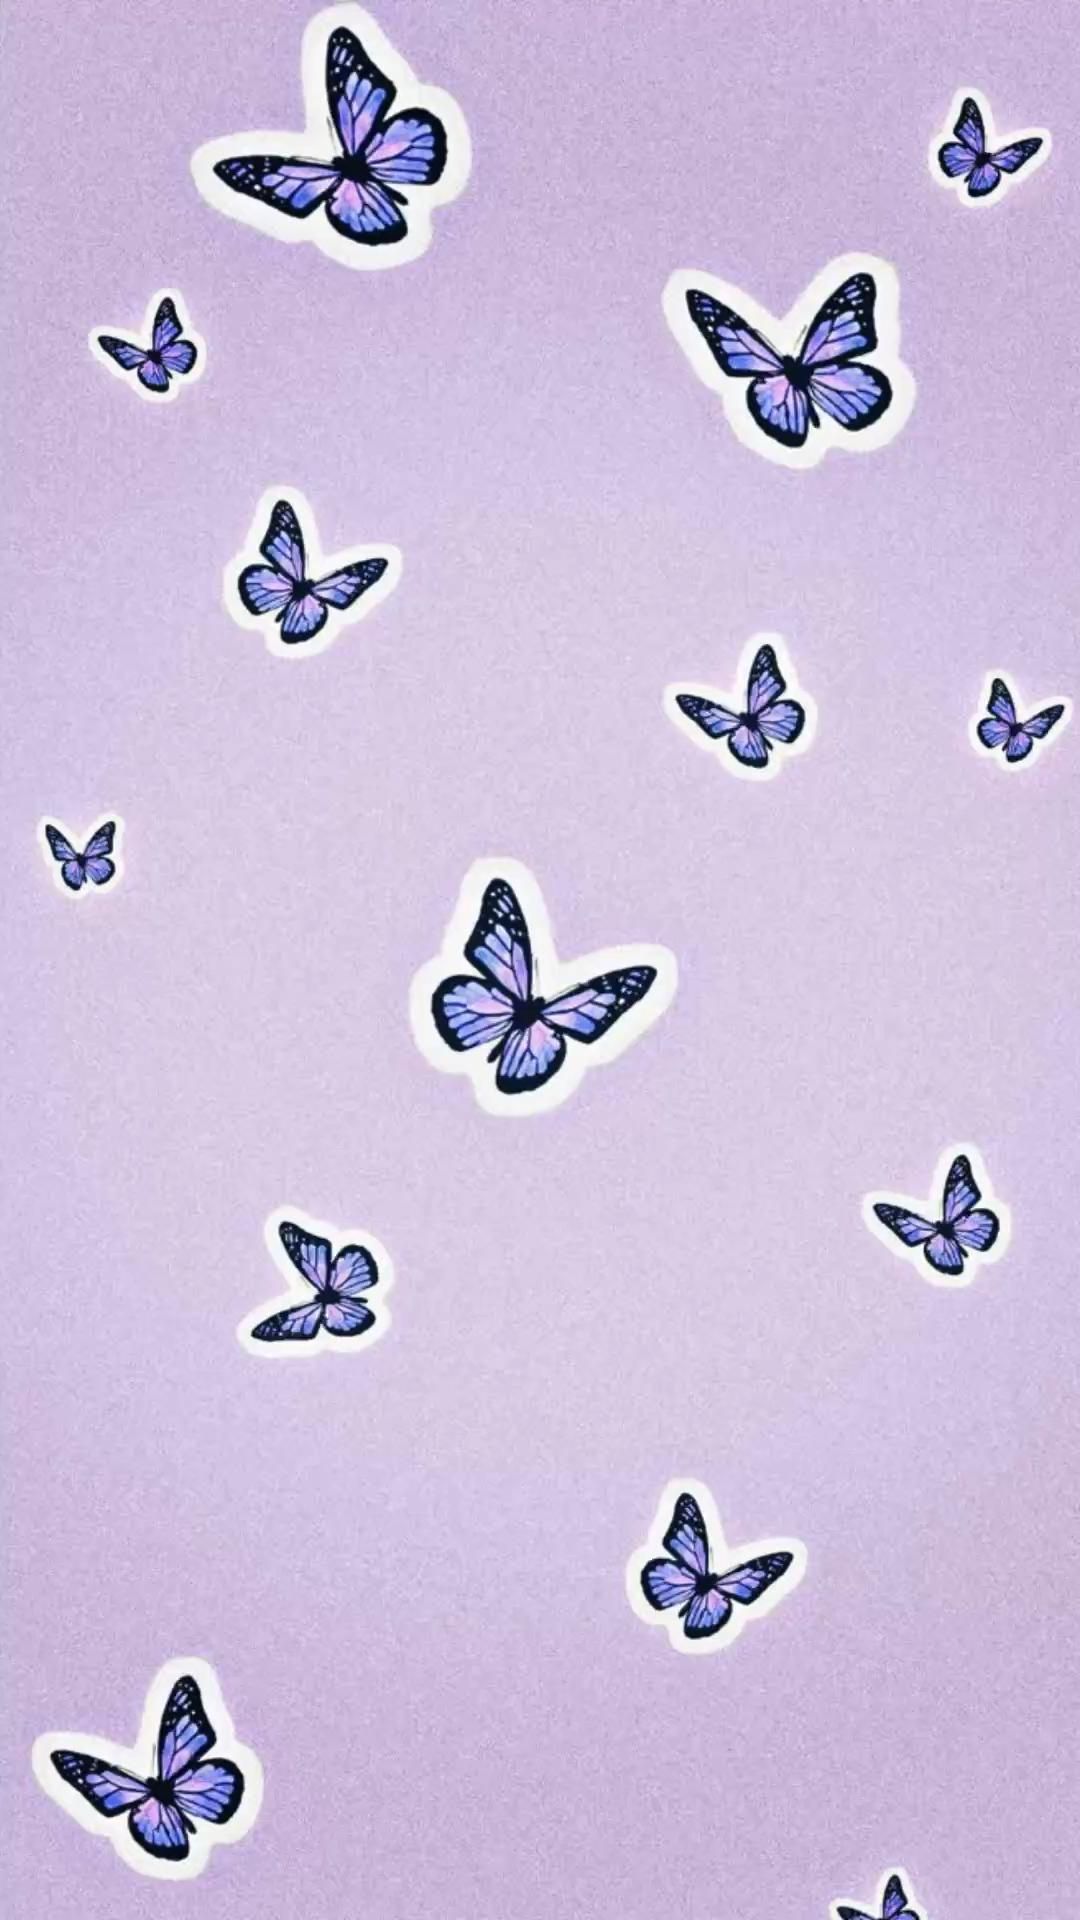 Butterfly aesthetic wallpaper. Butterfly wallpaper iphone, Purple wallpaper iphone, Purple butterfly wallpaper